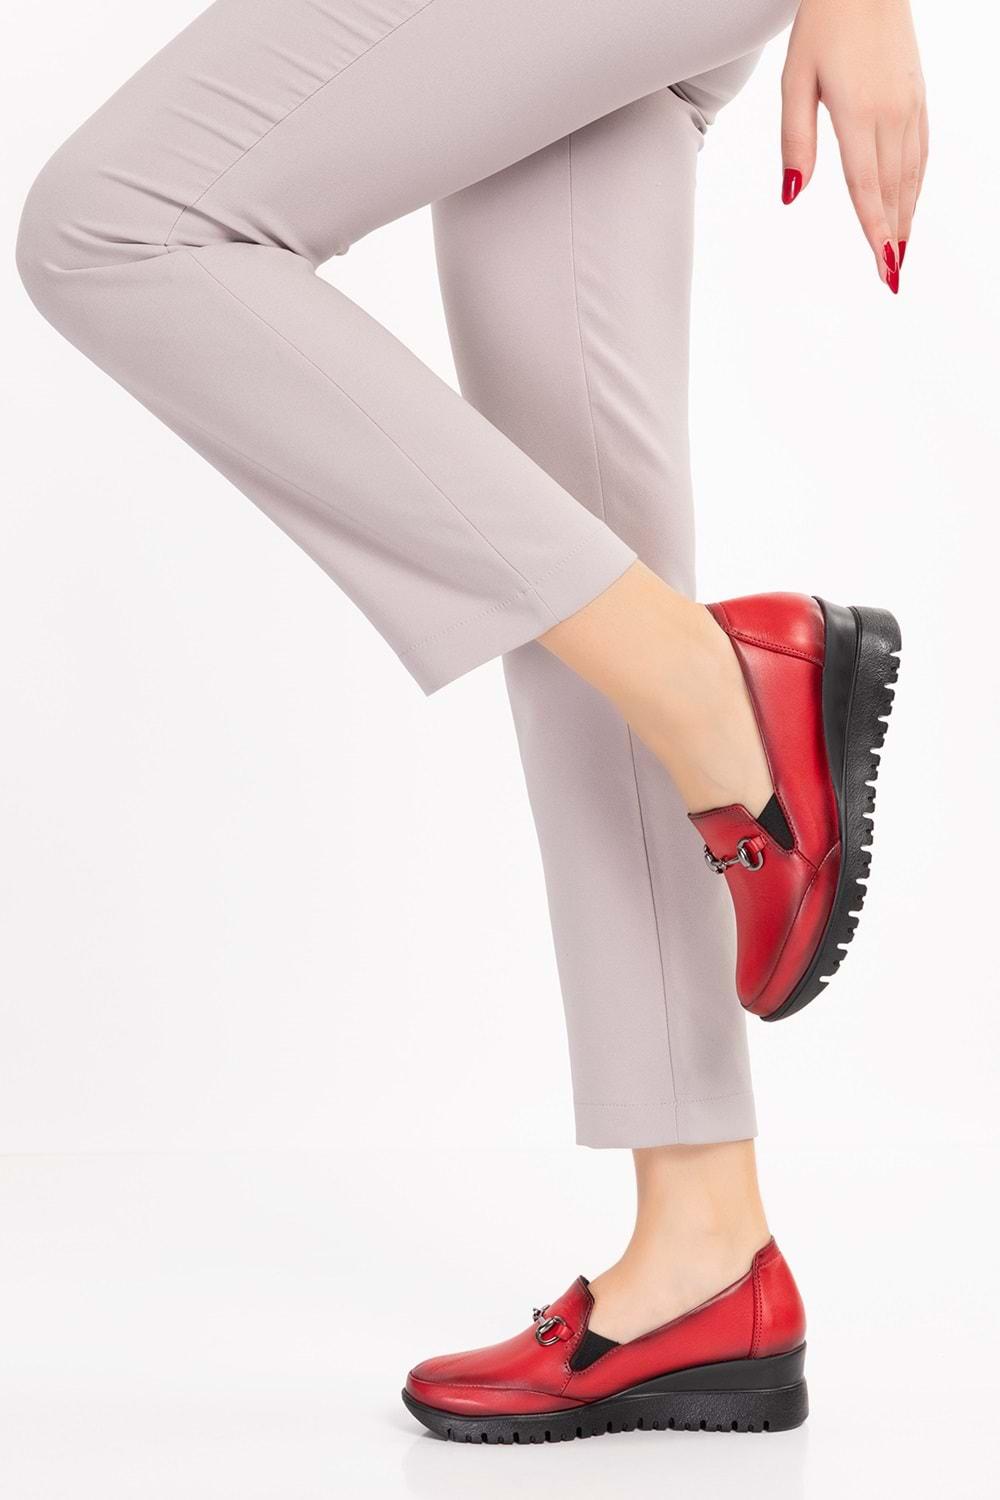 Gondol Kadın Hakiki Deri Anatomik Taban Tokalı Casual Ayakkabı pyt.6210 - kırmızı - 40